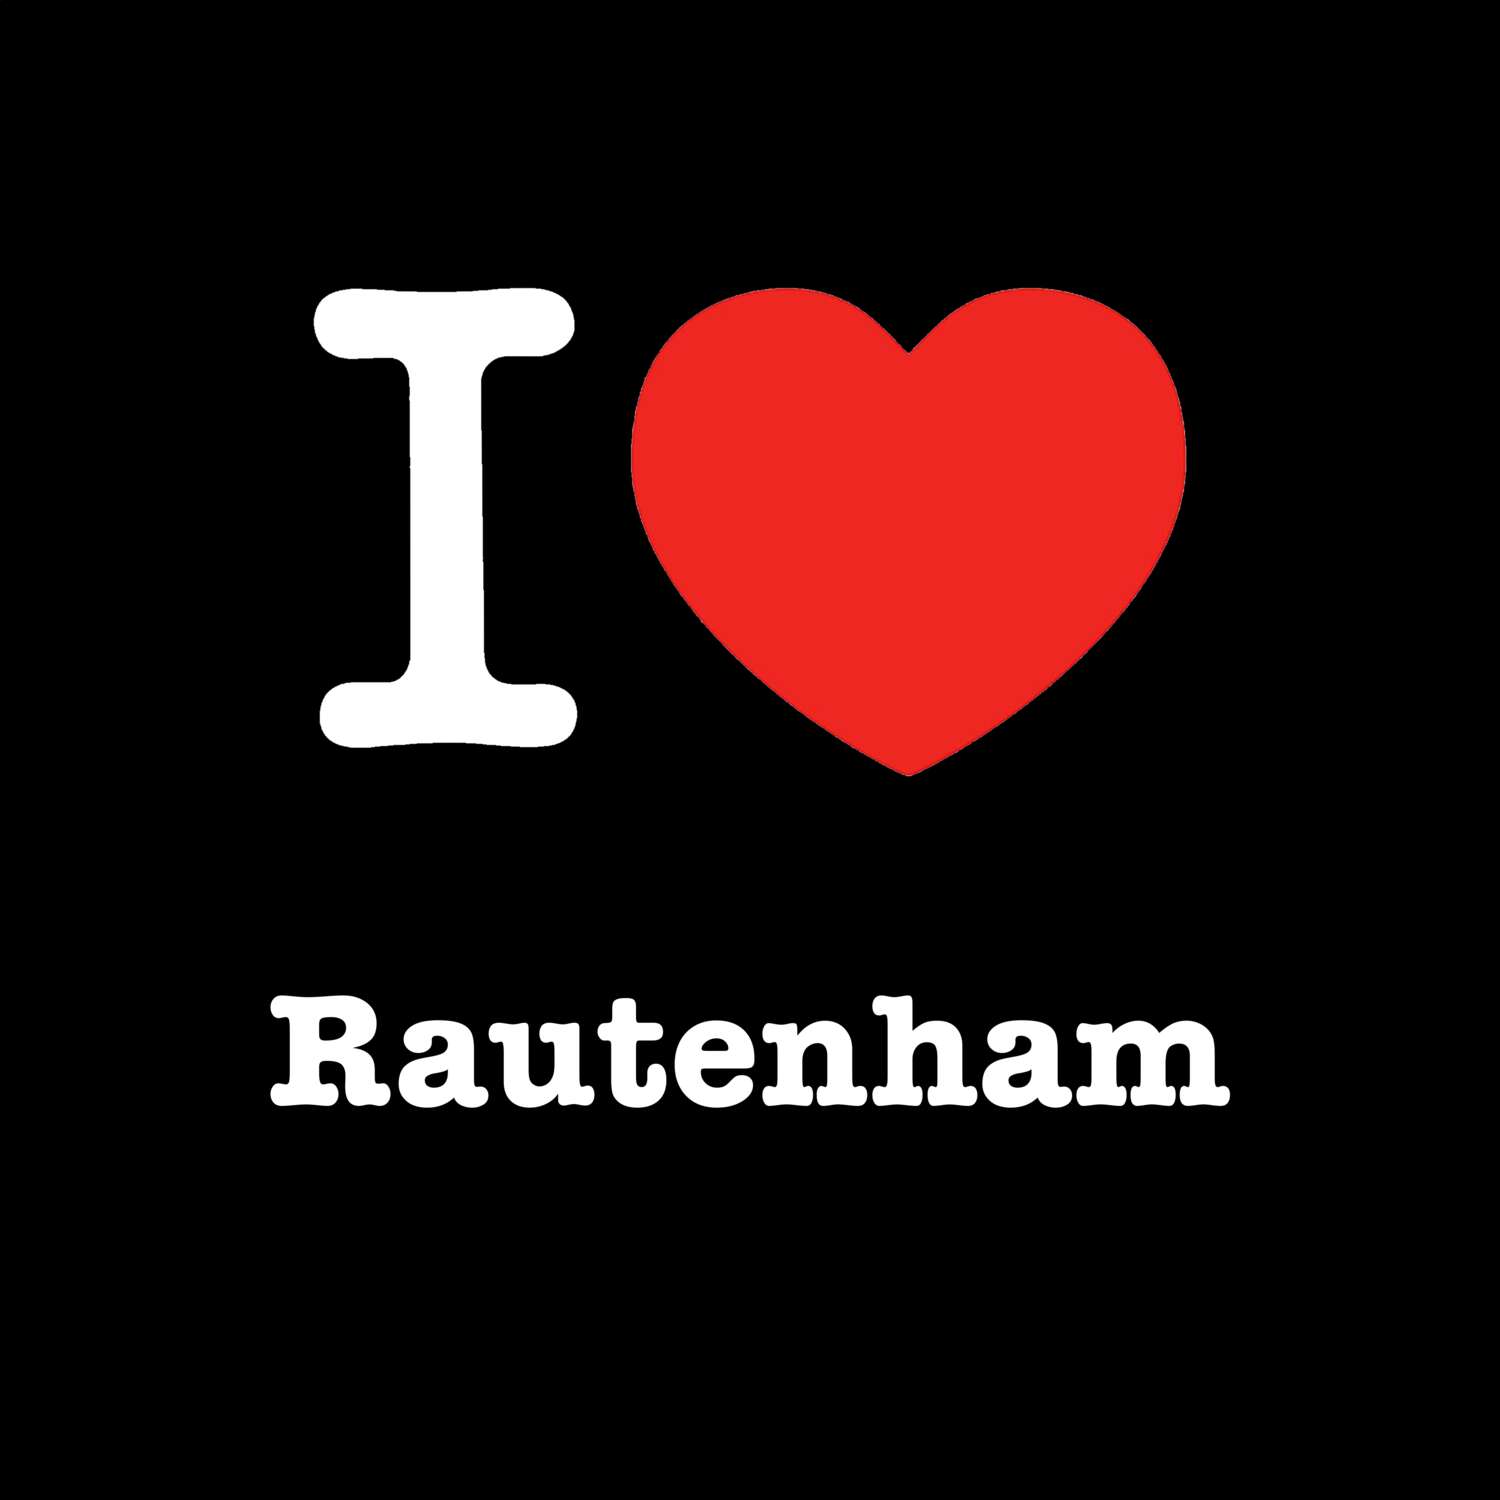 Rautenham T-Shirt »I love«